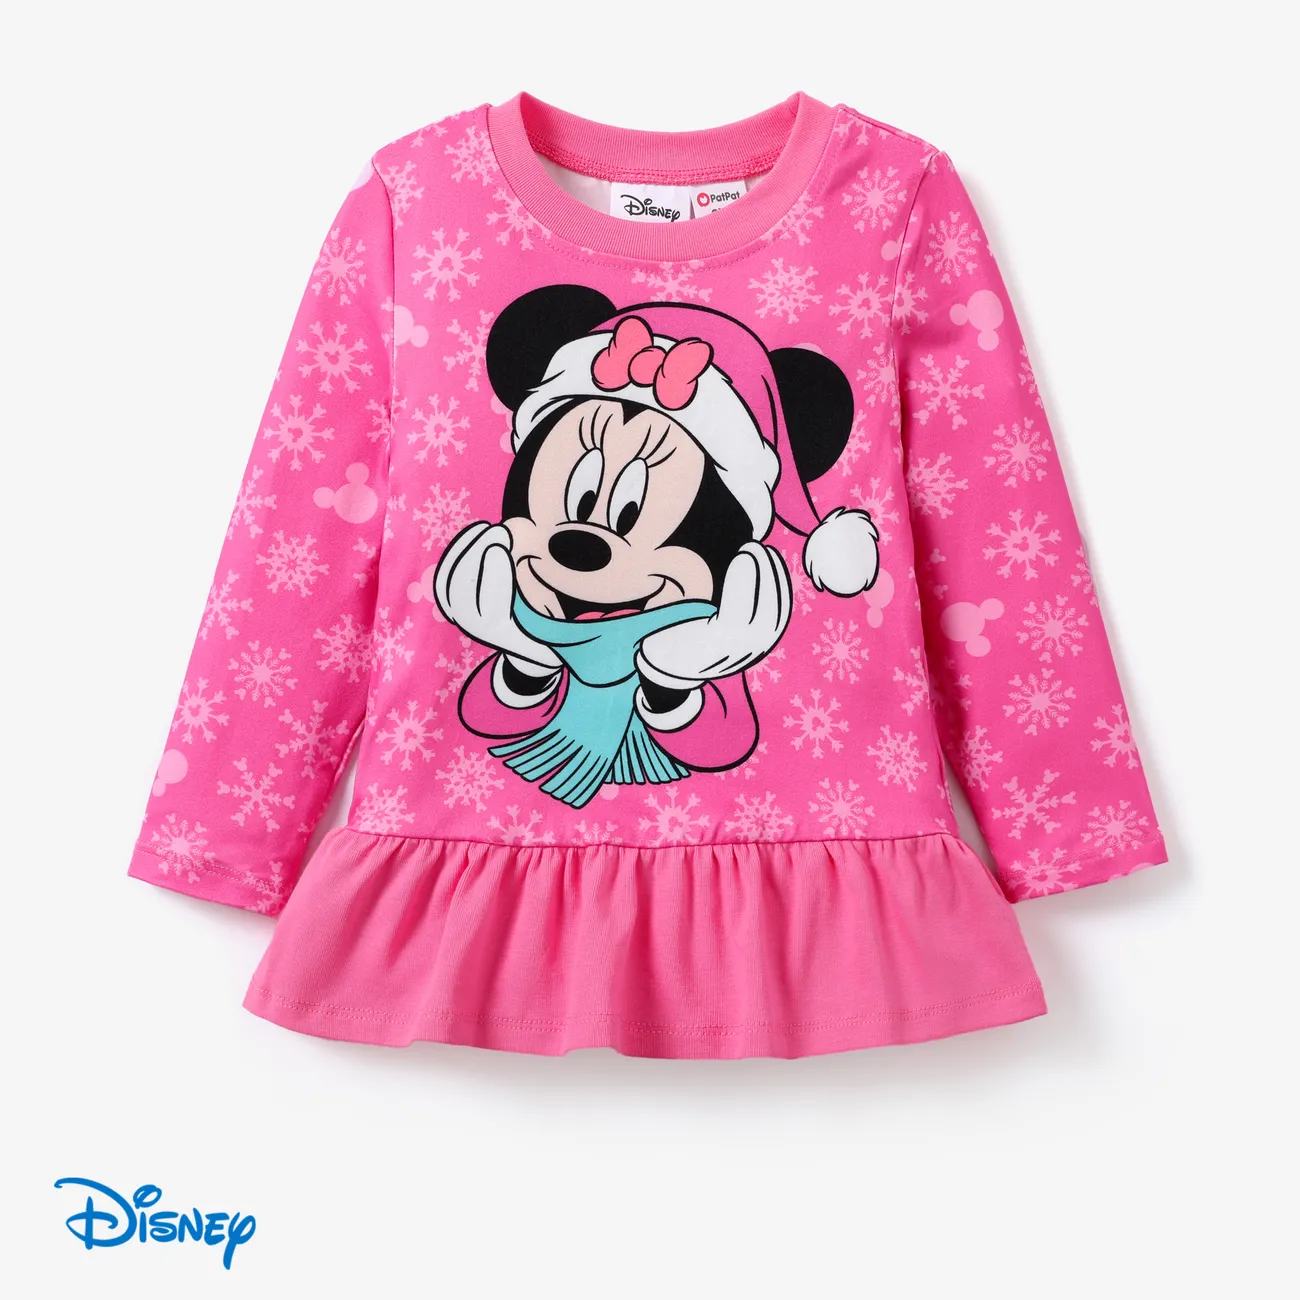 Disney Mickey and Friends Enfant en bas âge Fille Couture de tissus Enfantin ensembles de vestes Rose big image 1